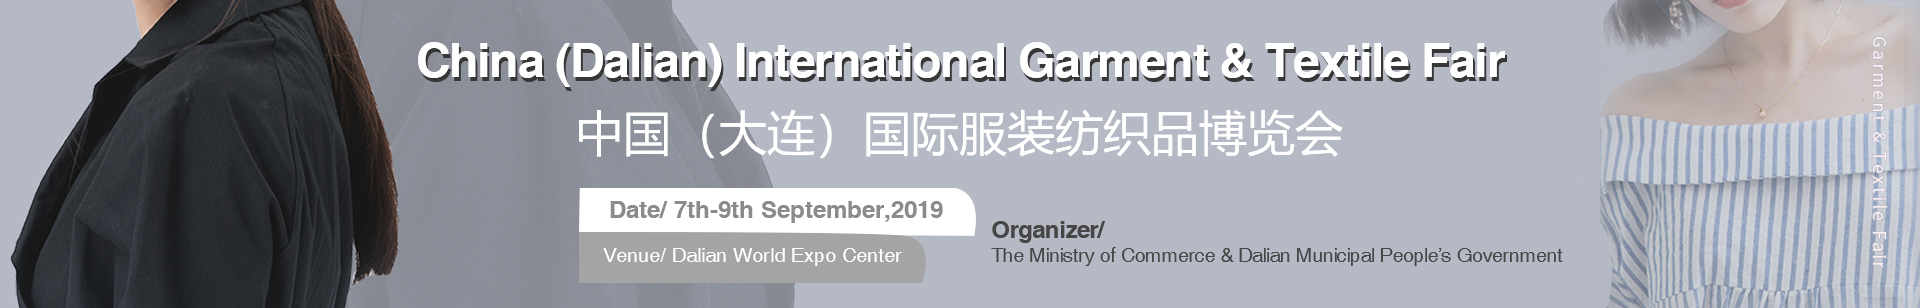 2019 China (Dalian) International Garment & Textile Fair